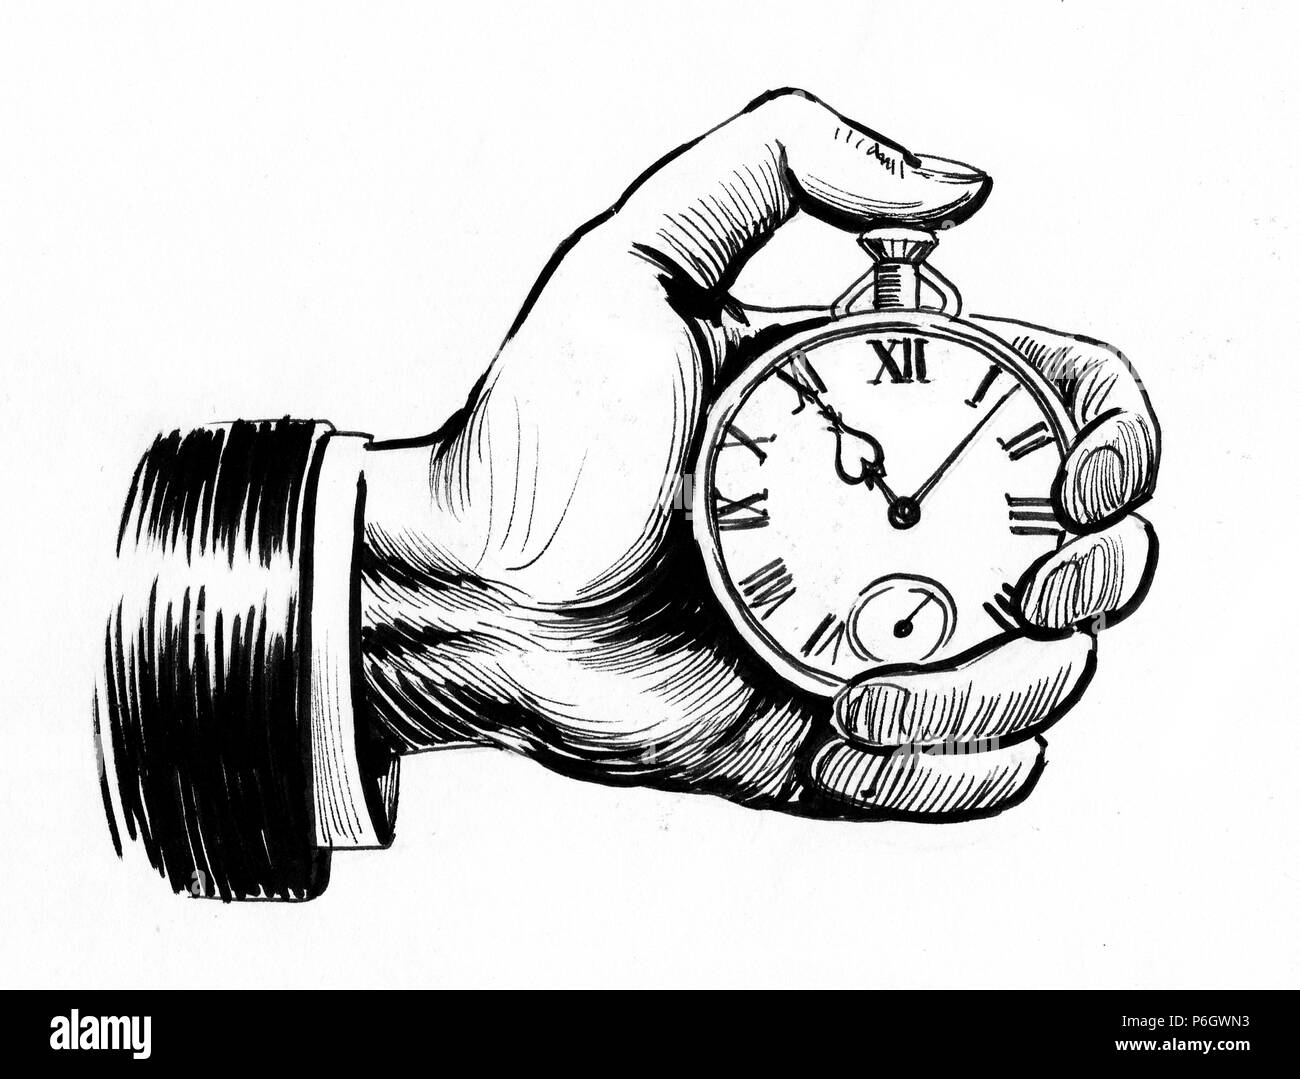 Mano sujetando un reloj cronómetro. Ilustración en blanco y negro